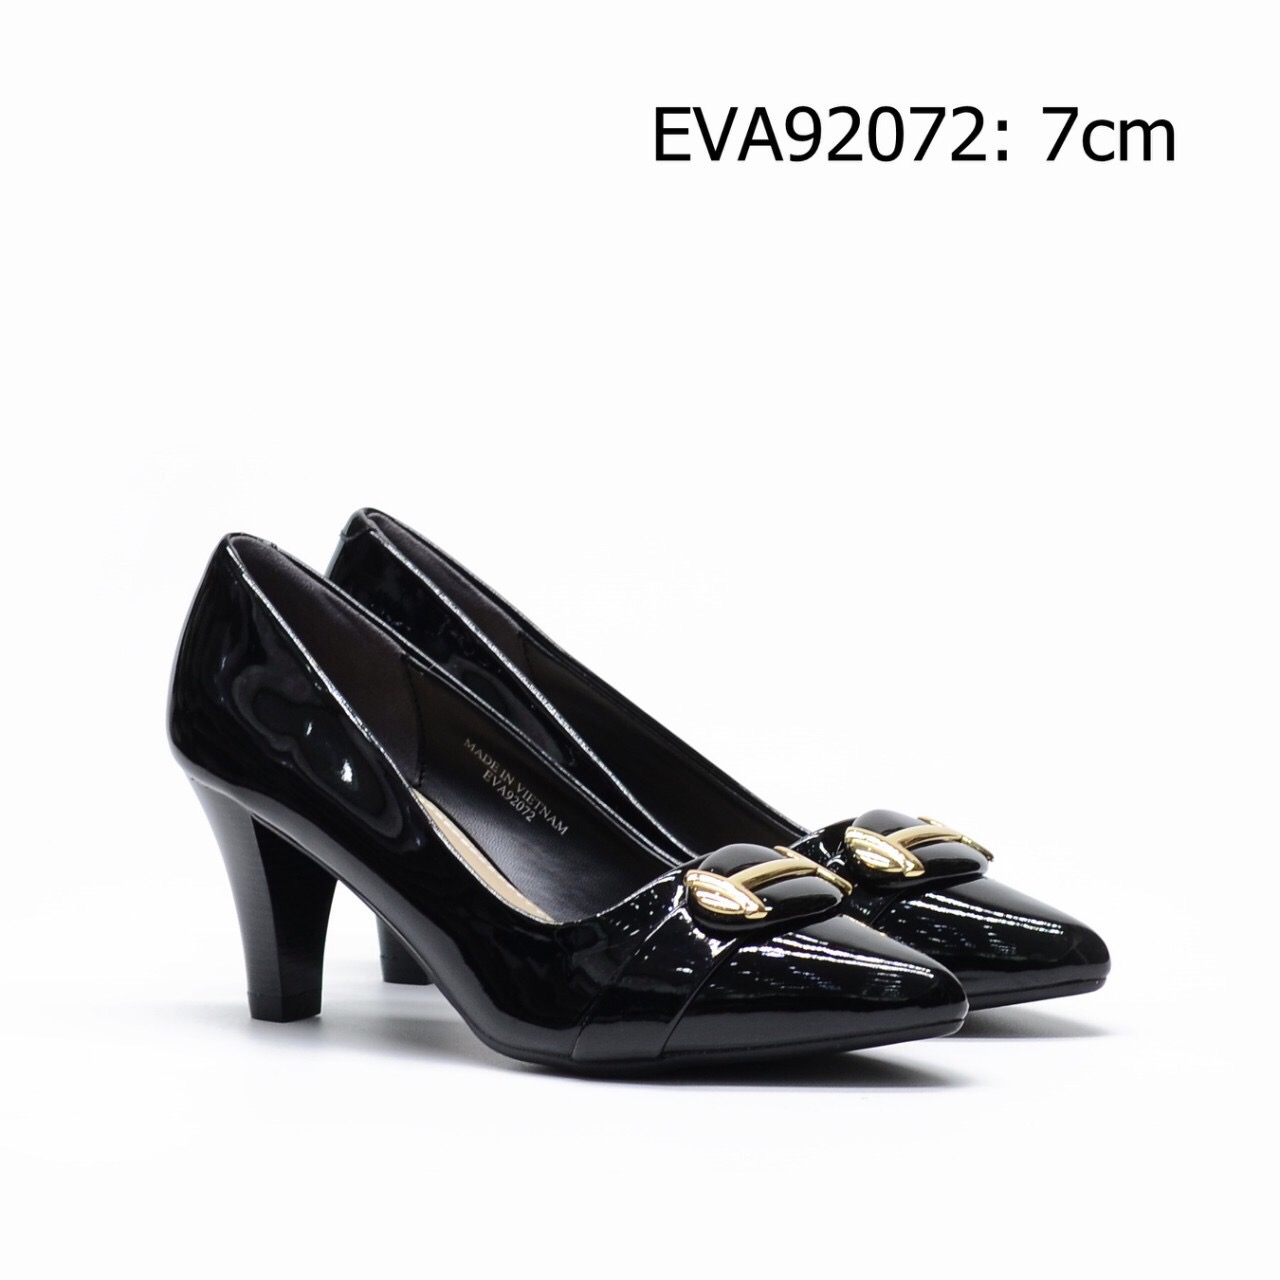 Giày cao gót da bóng EVA92072 thiết kế nơ kim loại nổi bật